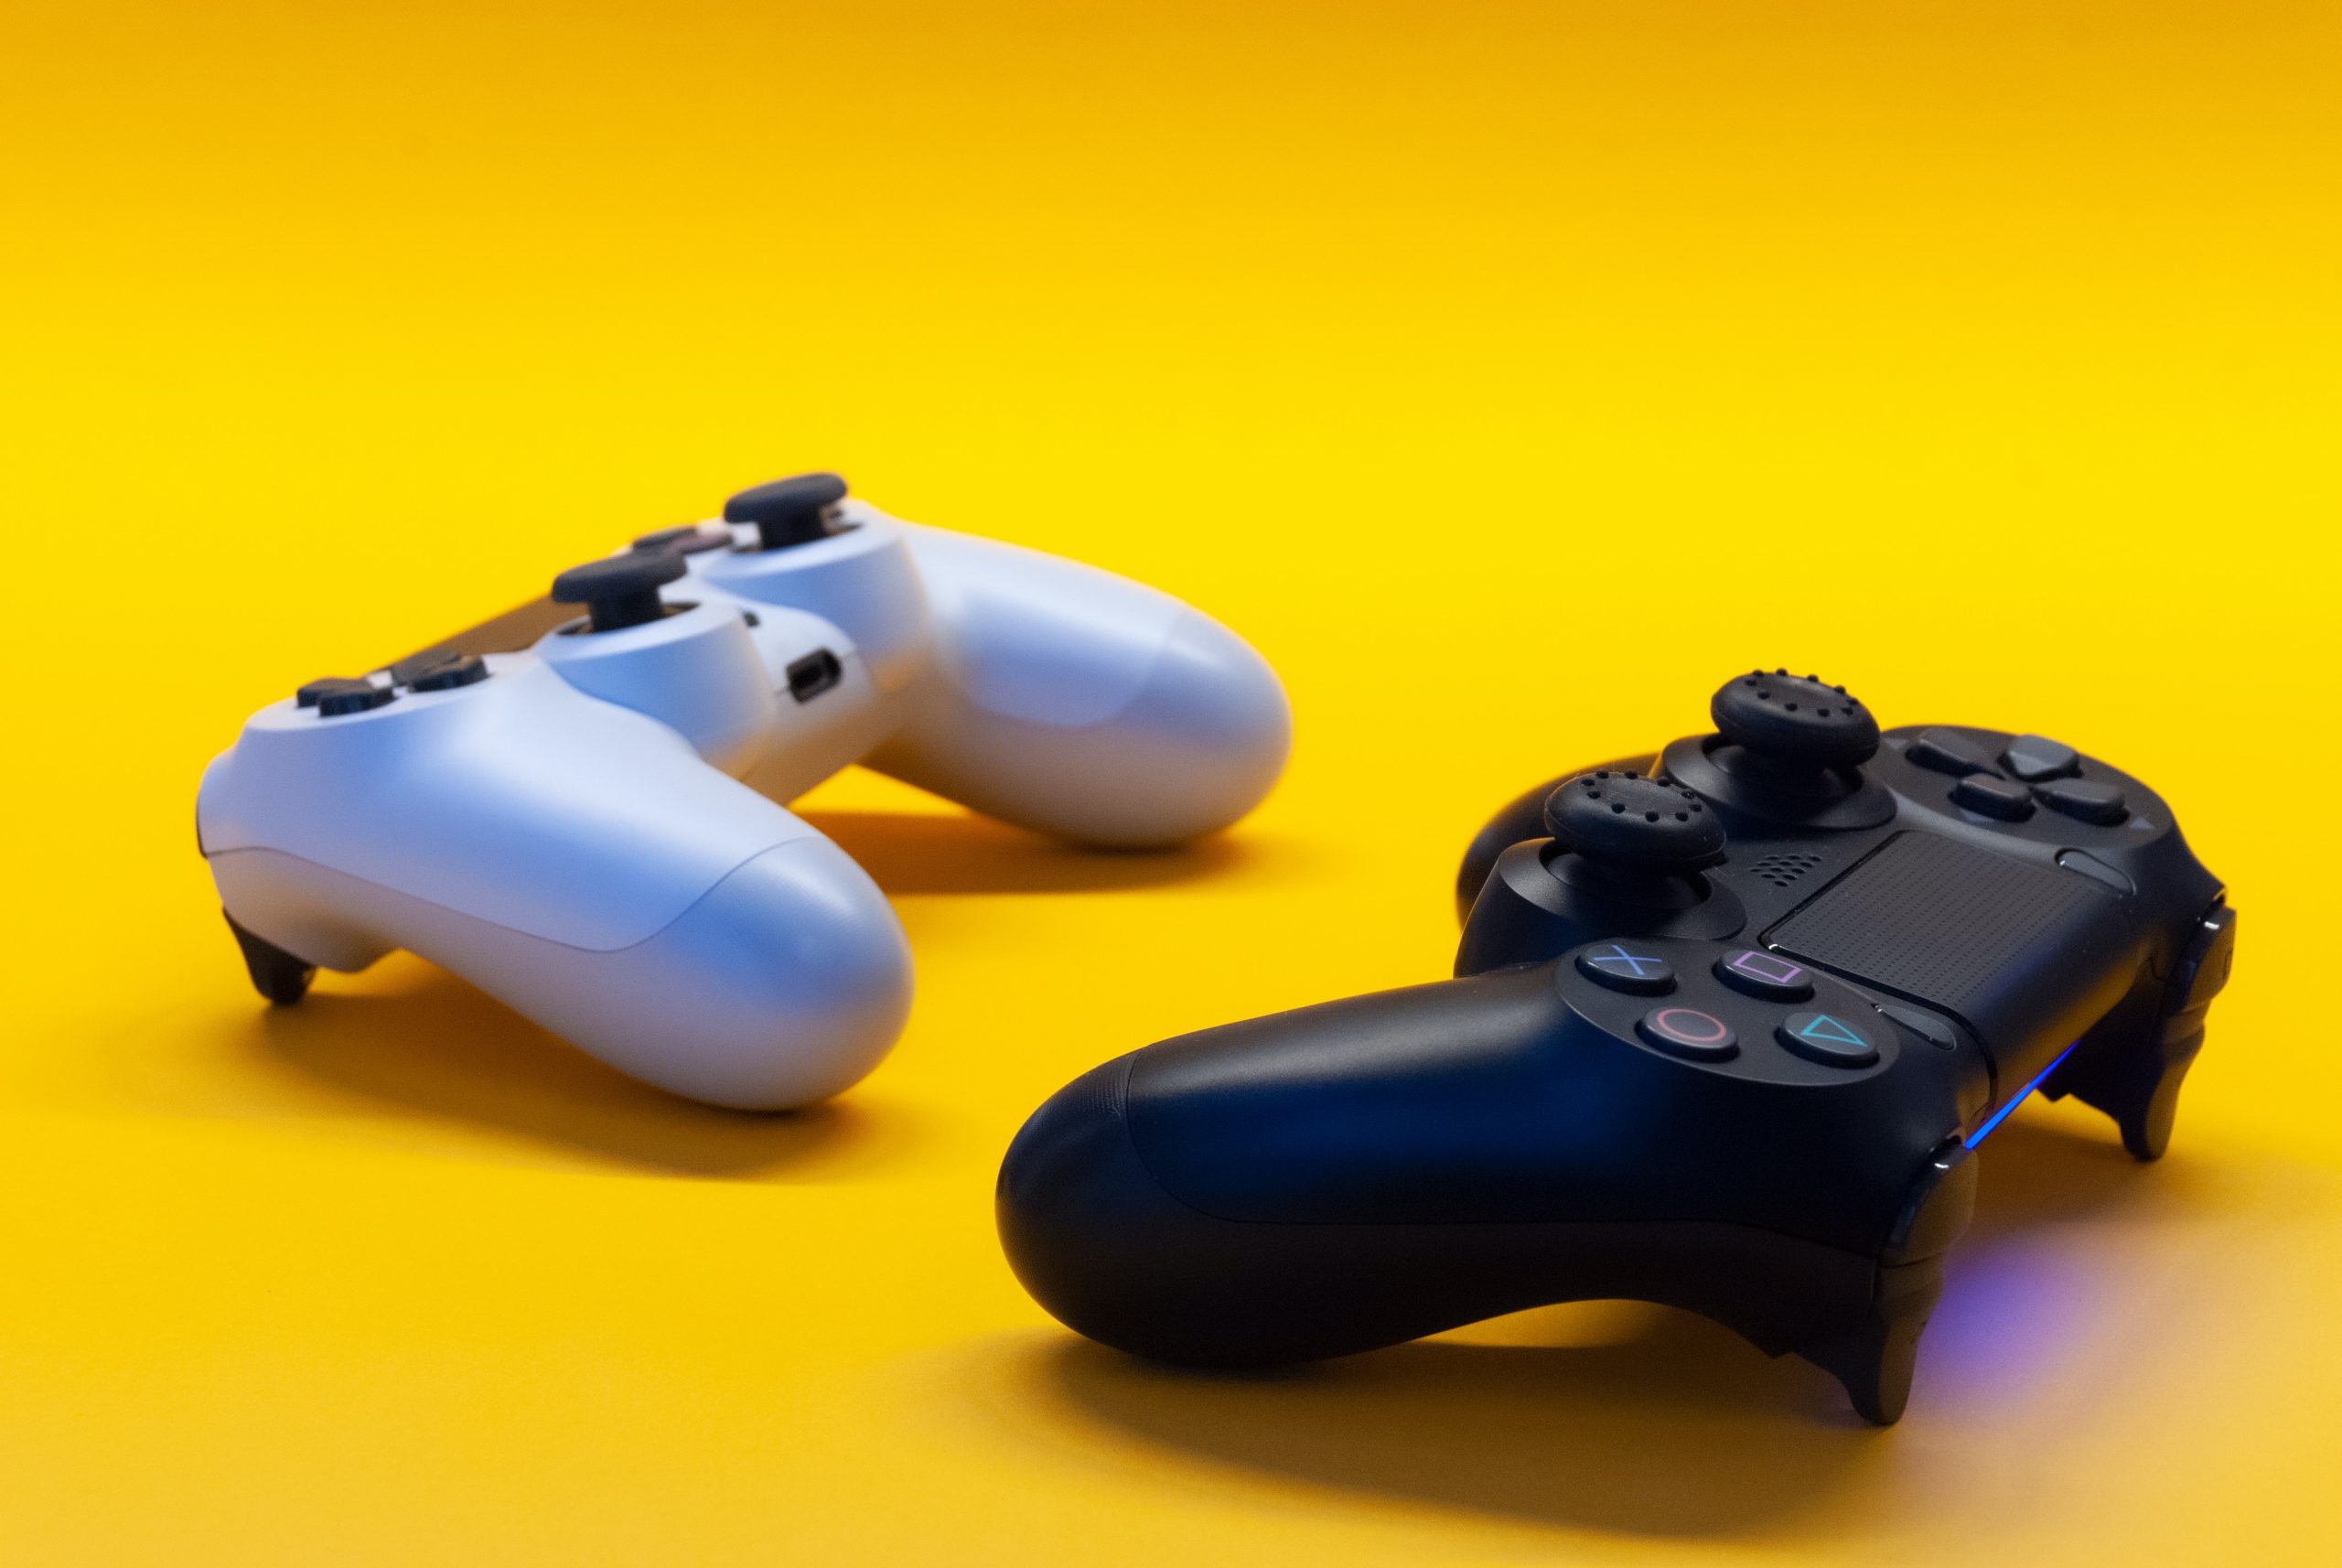 Dos mandos de consola de videojuegos sobre un fondo plano amarillo